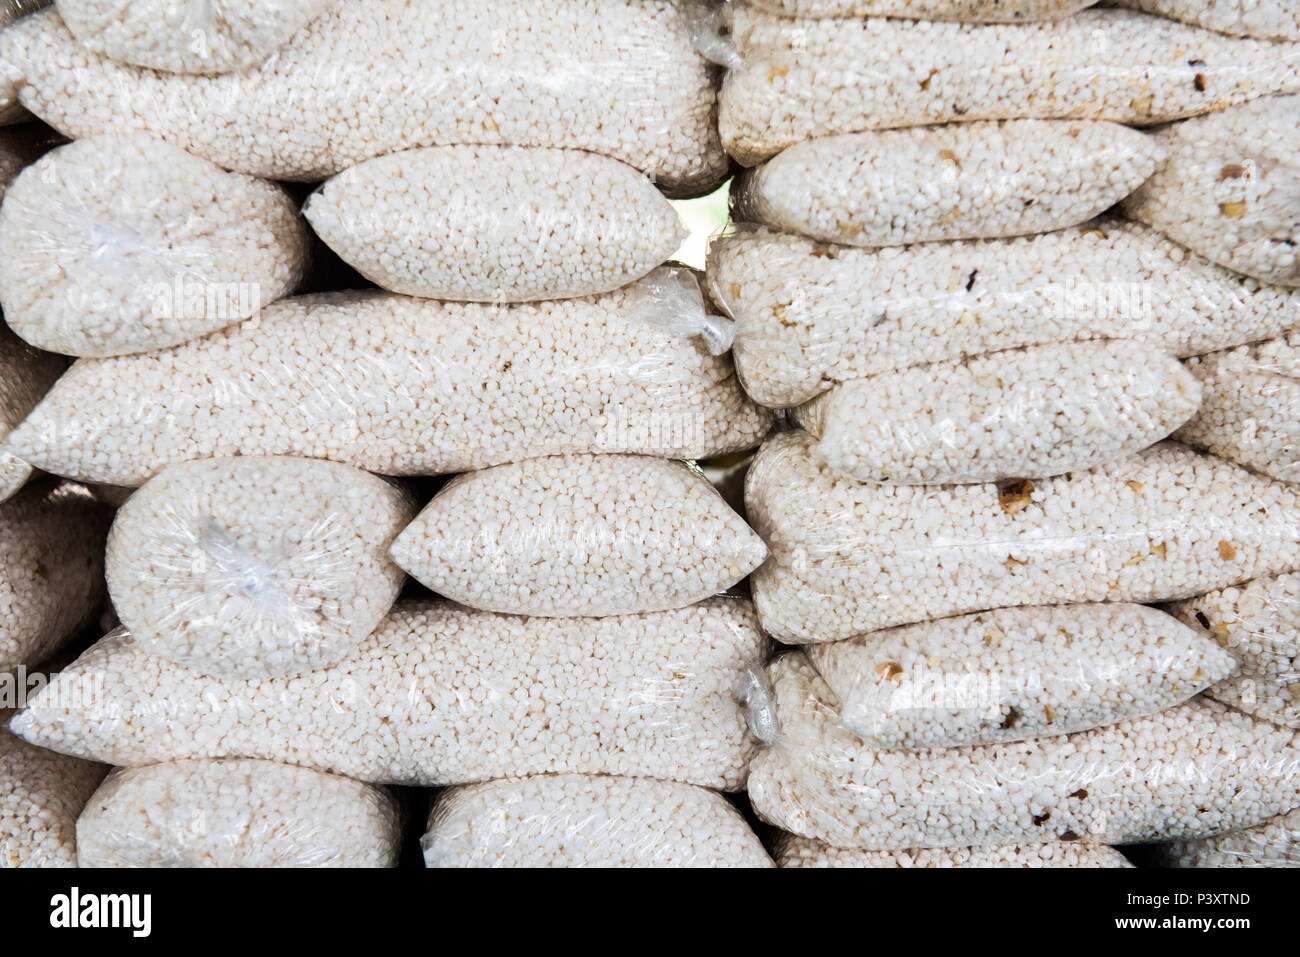 Mandioca " de tapioca granulada com castanha duranti feira de Produtos  regionais em Iranduba/AM Foto stock - Alamy